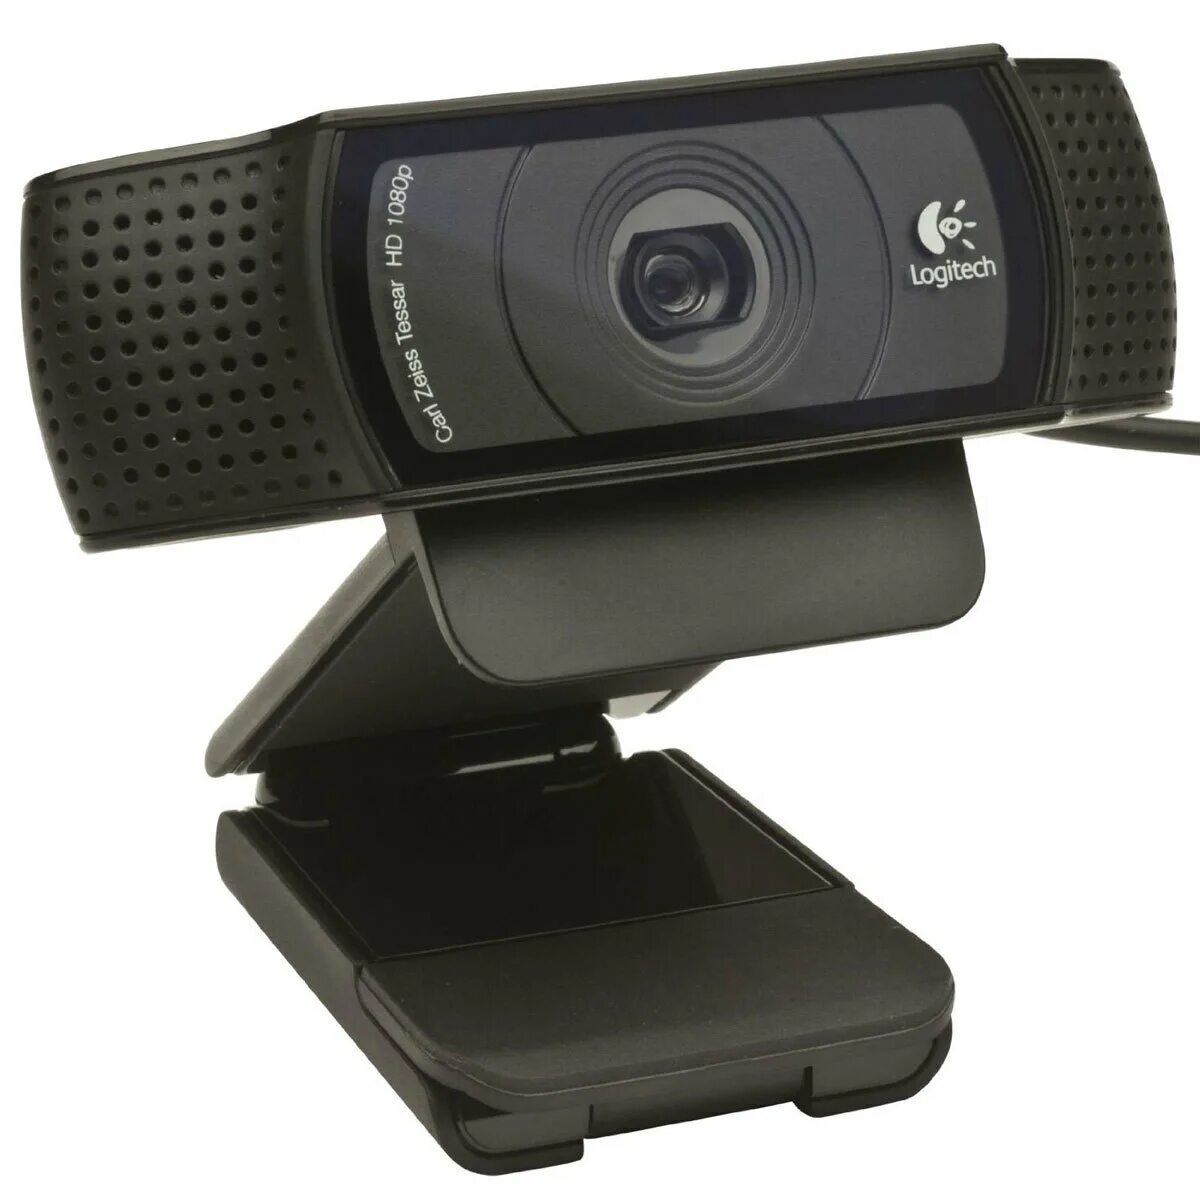 Вебка цена. Веб-камера Logitech c920. Камера Logitech c920 Pro. Web-камера Logitech HD Pro c920. Web-камера Logitech HD Pro c920, черный.